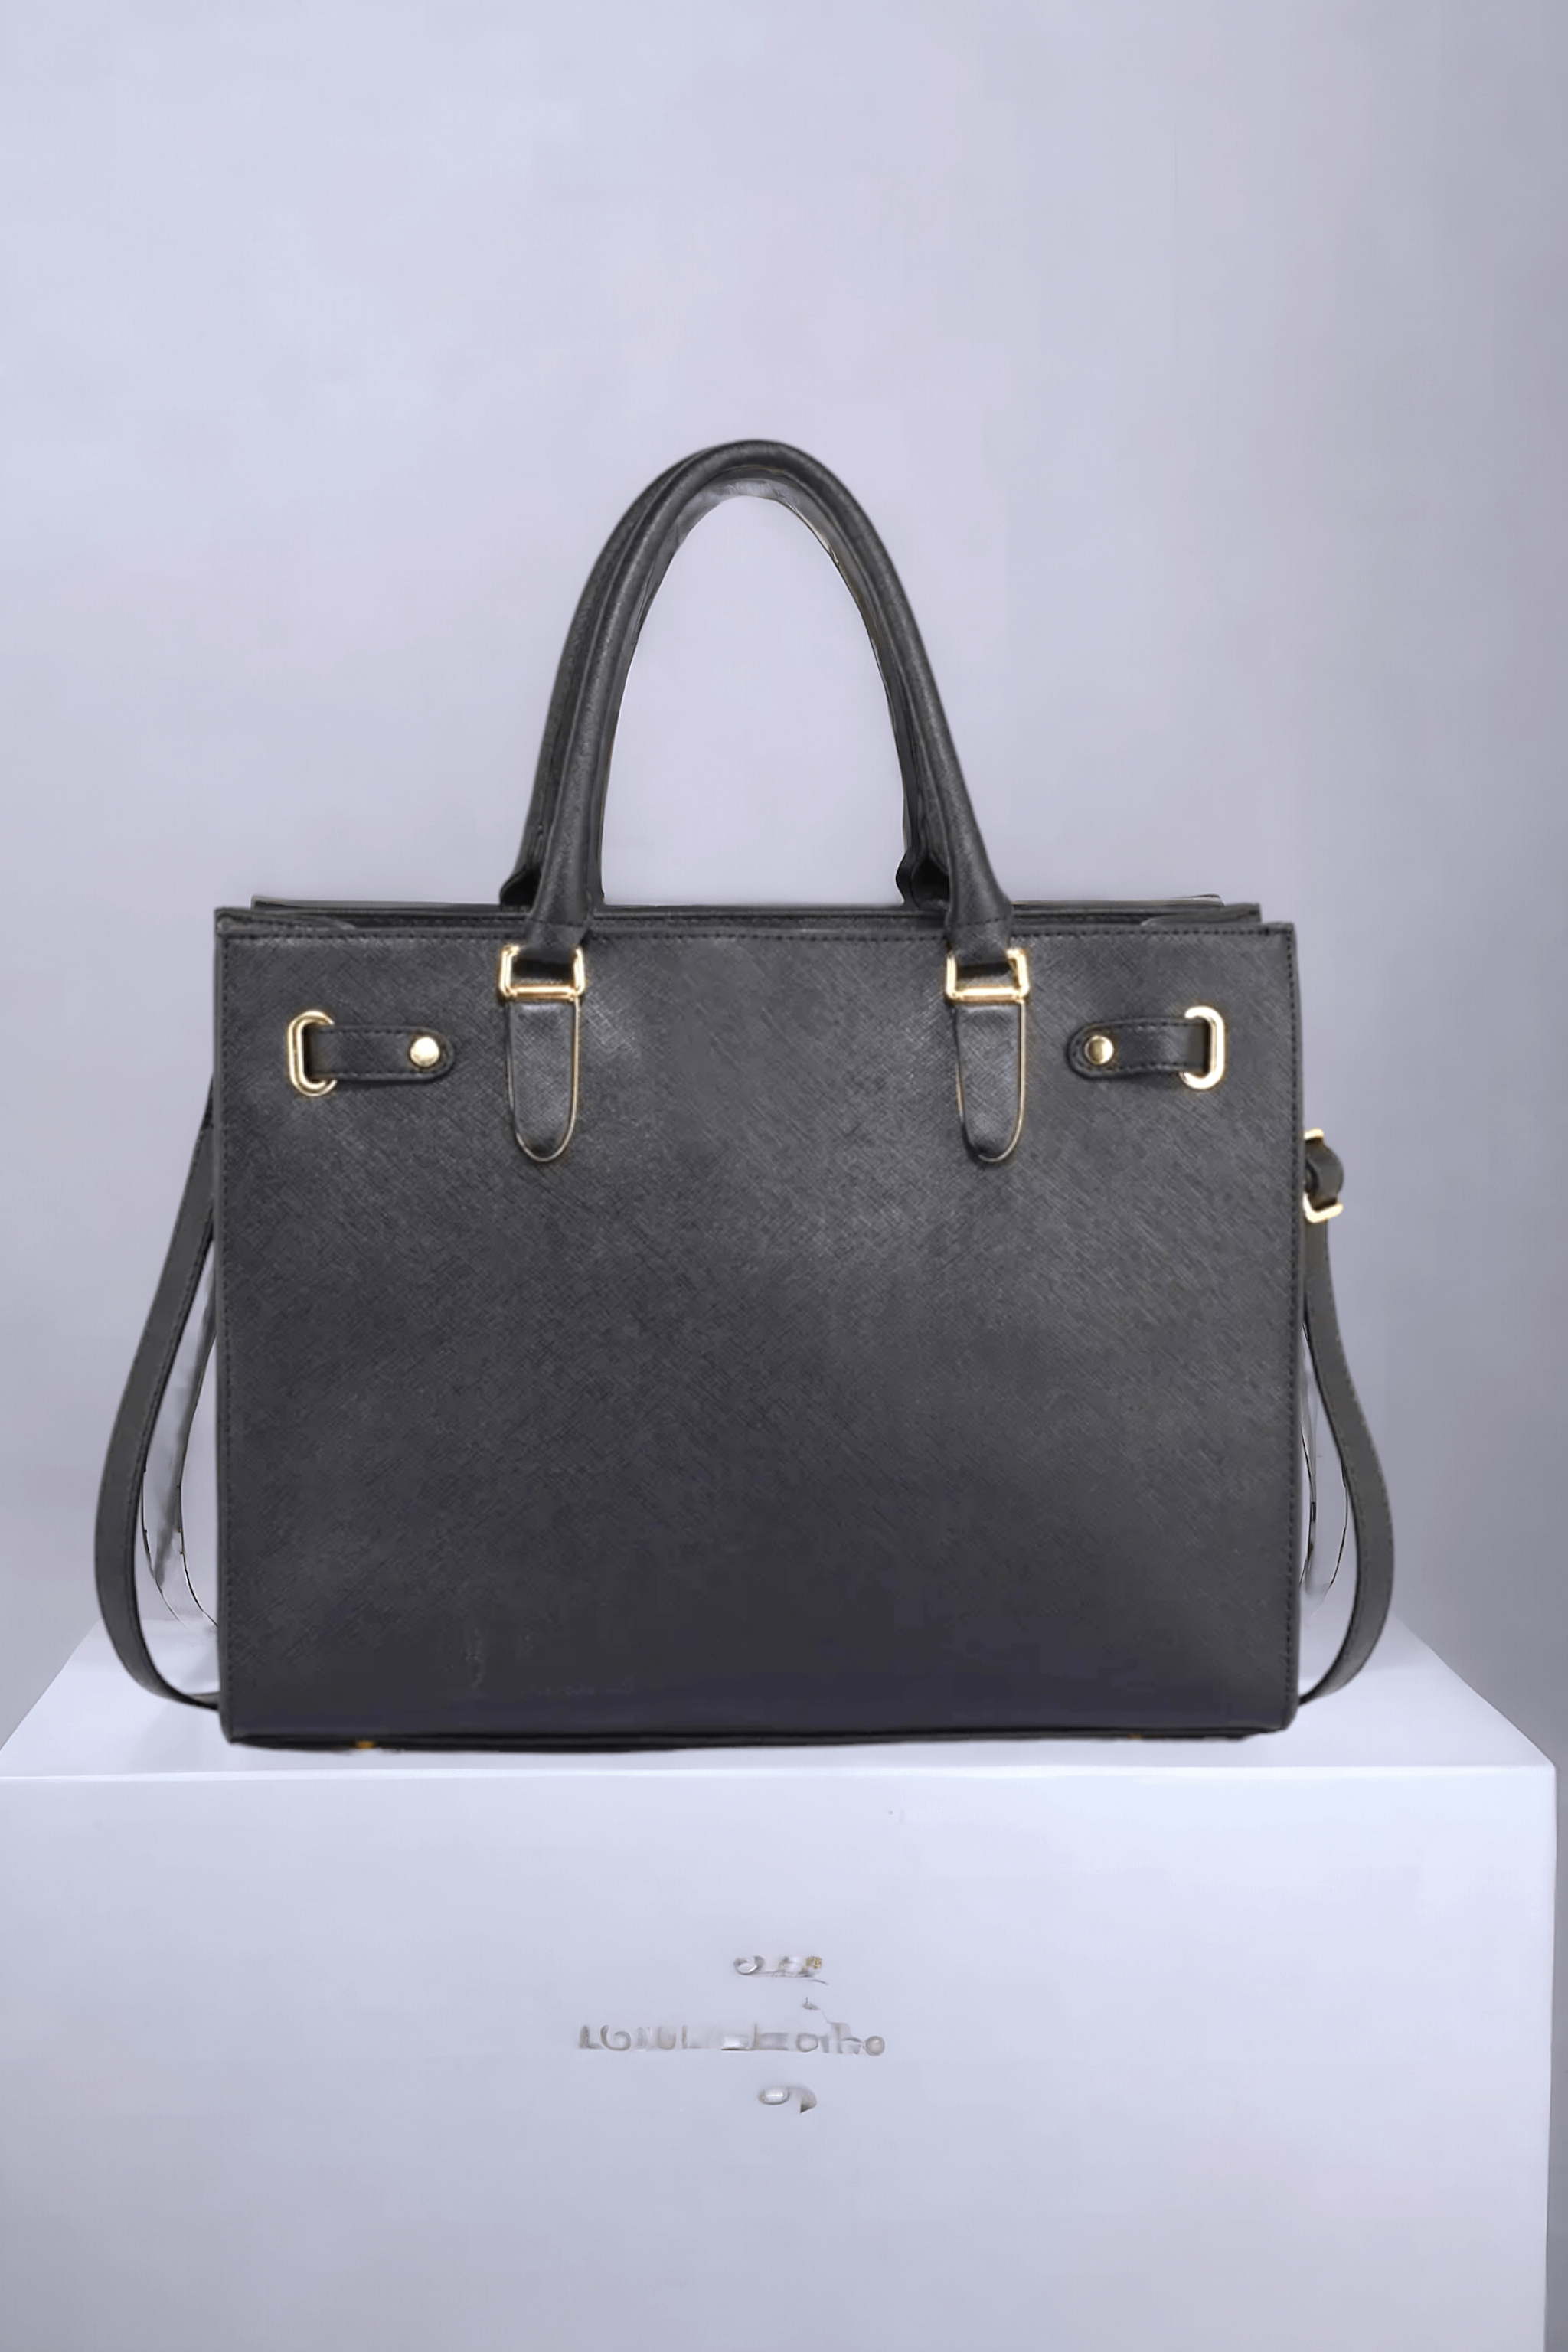 Black Leather Designed Handbag 340Gh¢